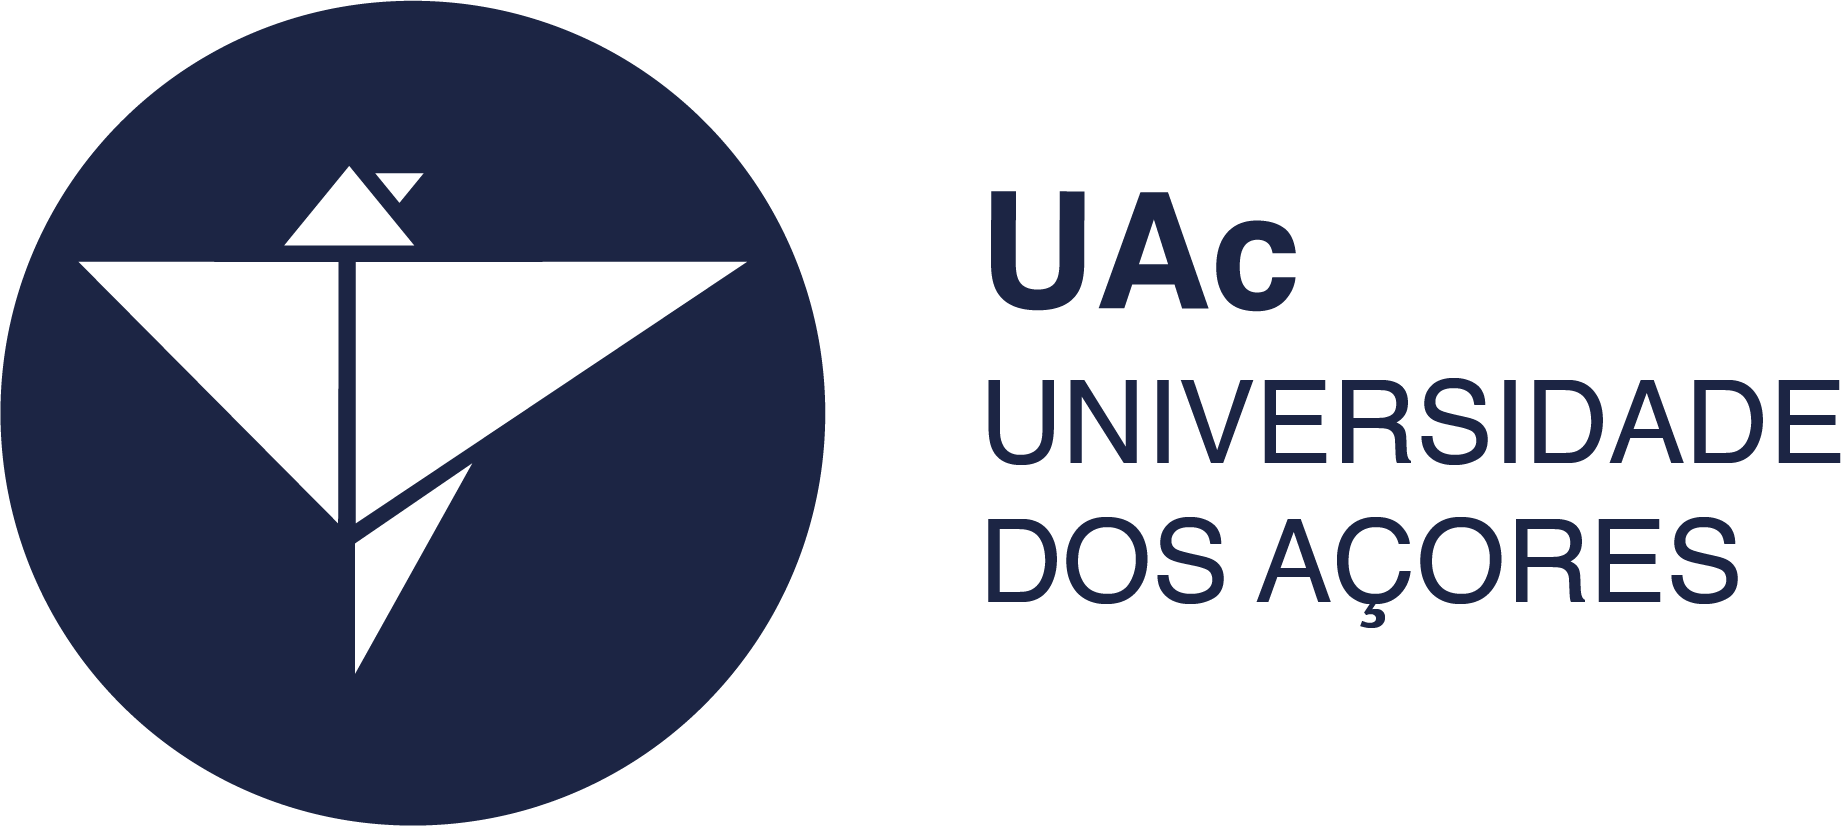 UAc Universidade dos Açores